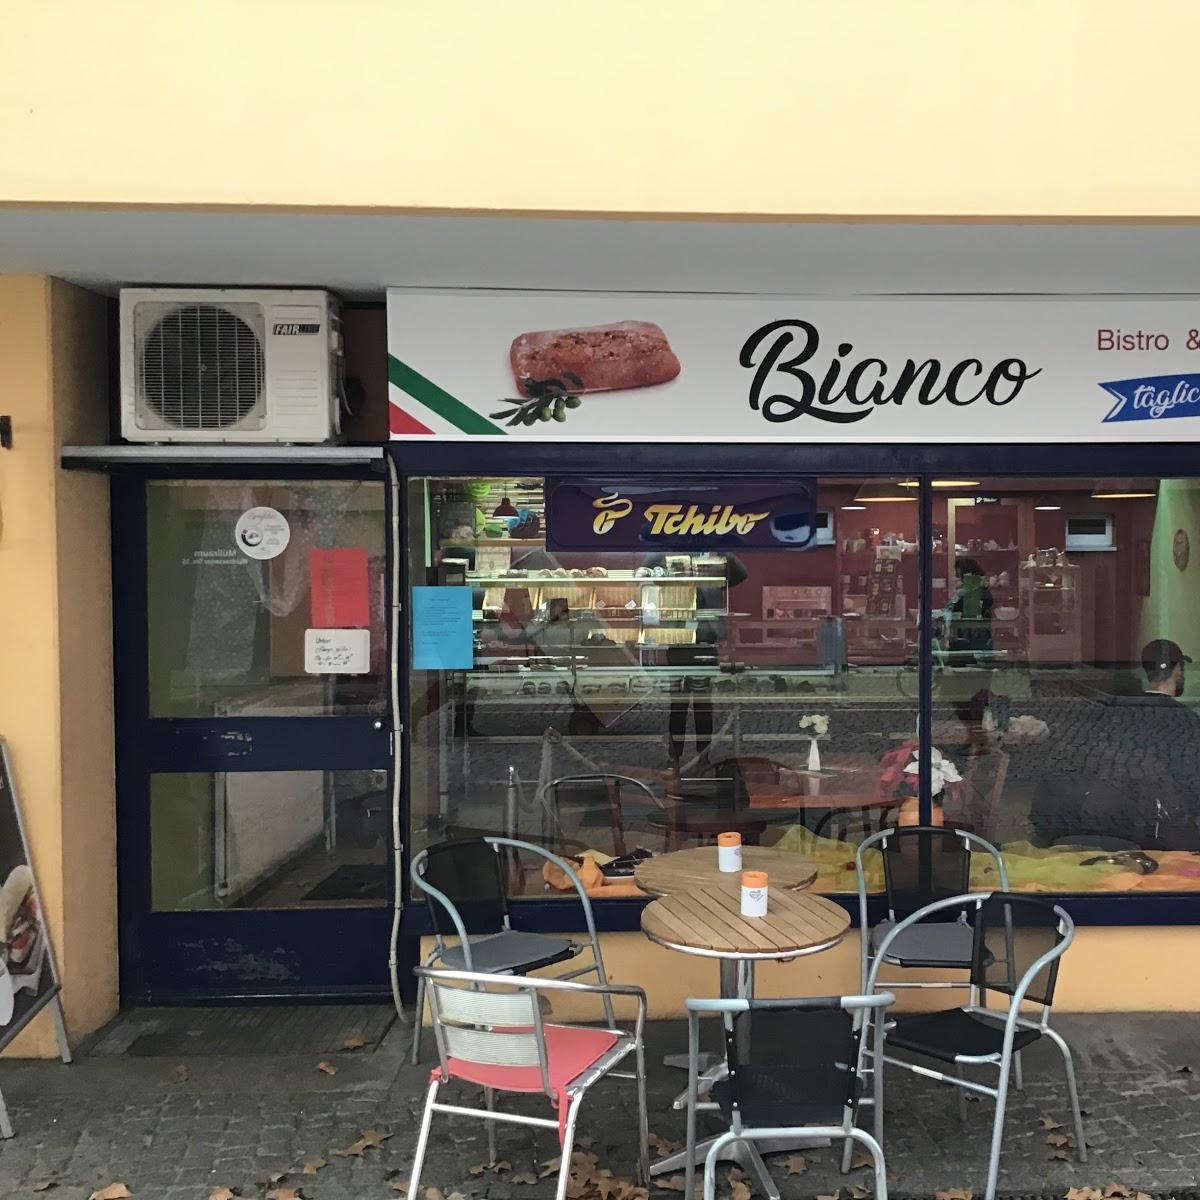 Restaurant "Bistro Bianco" in Berlin